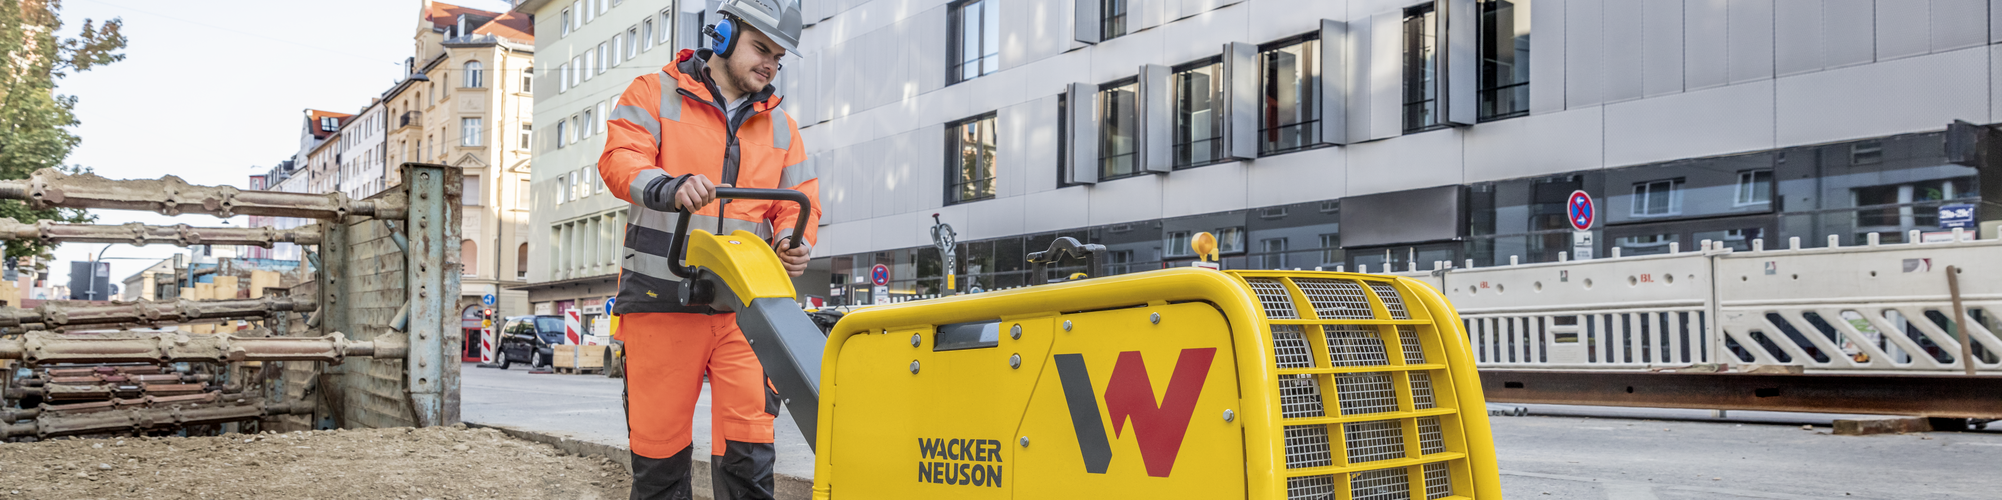 Una plancha vibratoria de Wacker Neuson en acción en una obra en la ciudad.